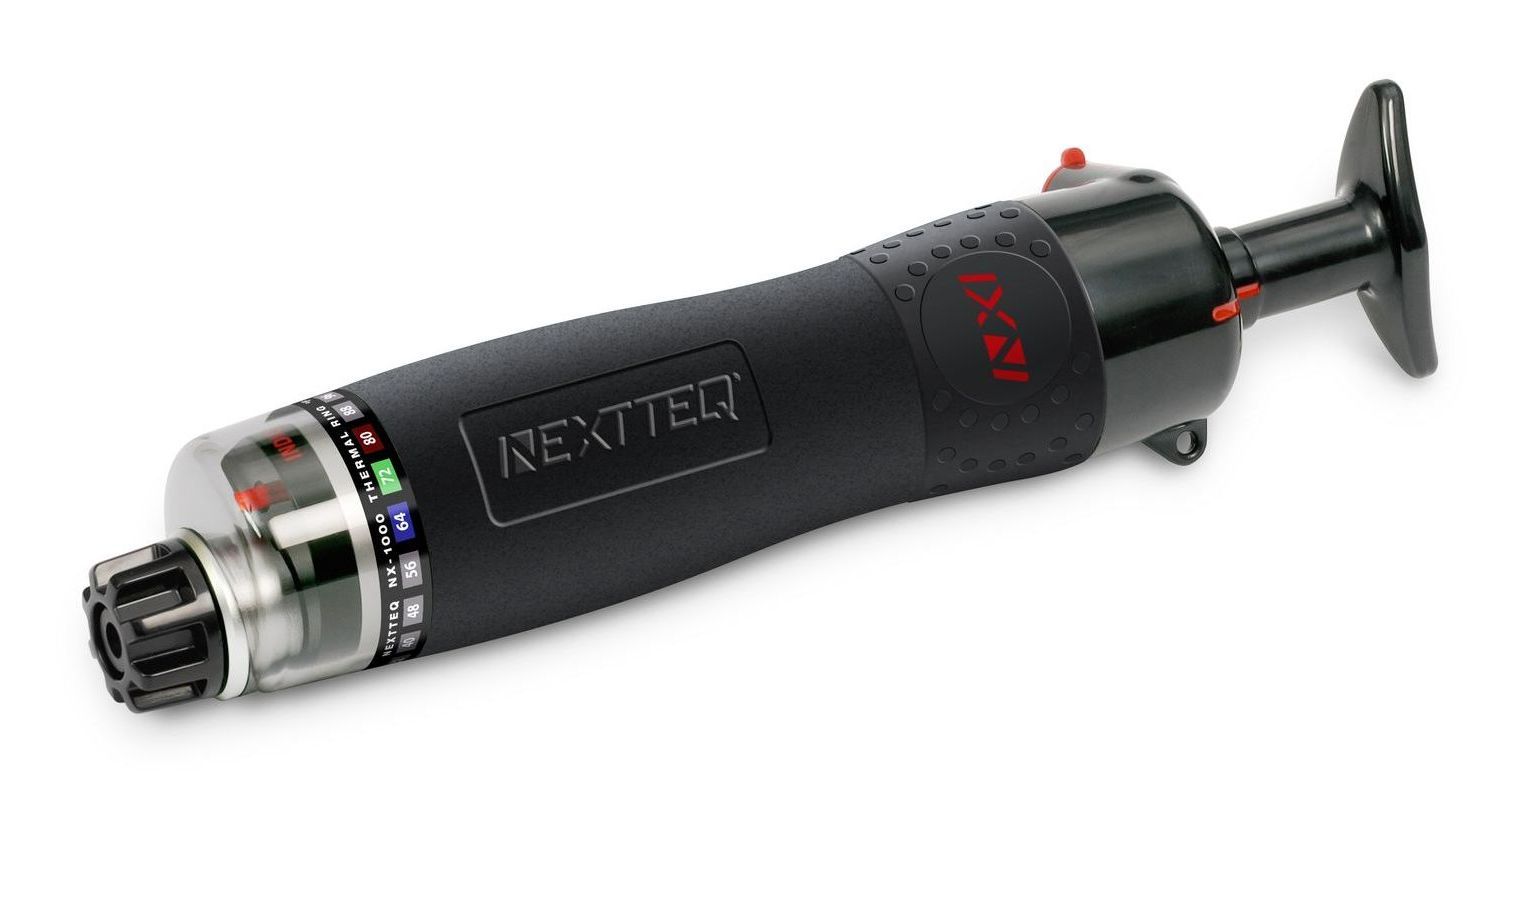 A Nextteq® NX-1000 Pump.